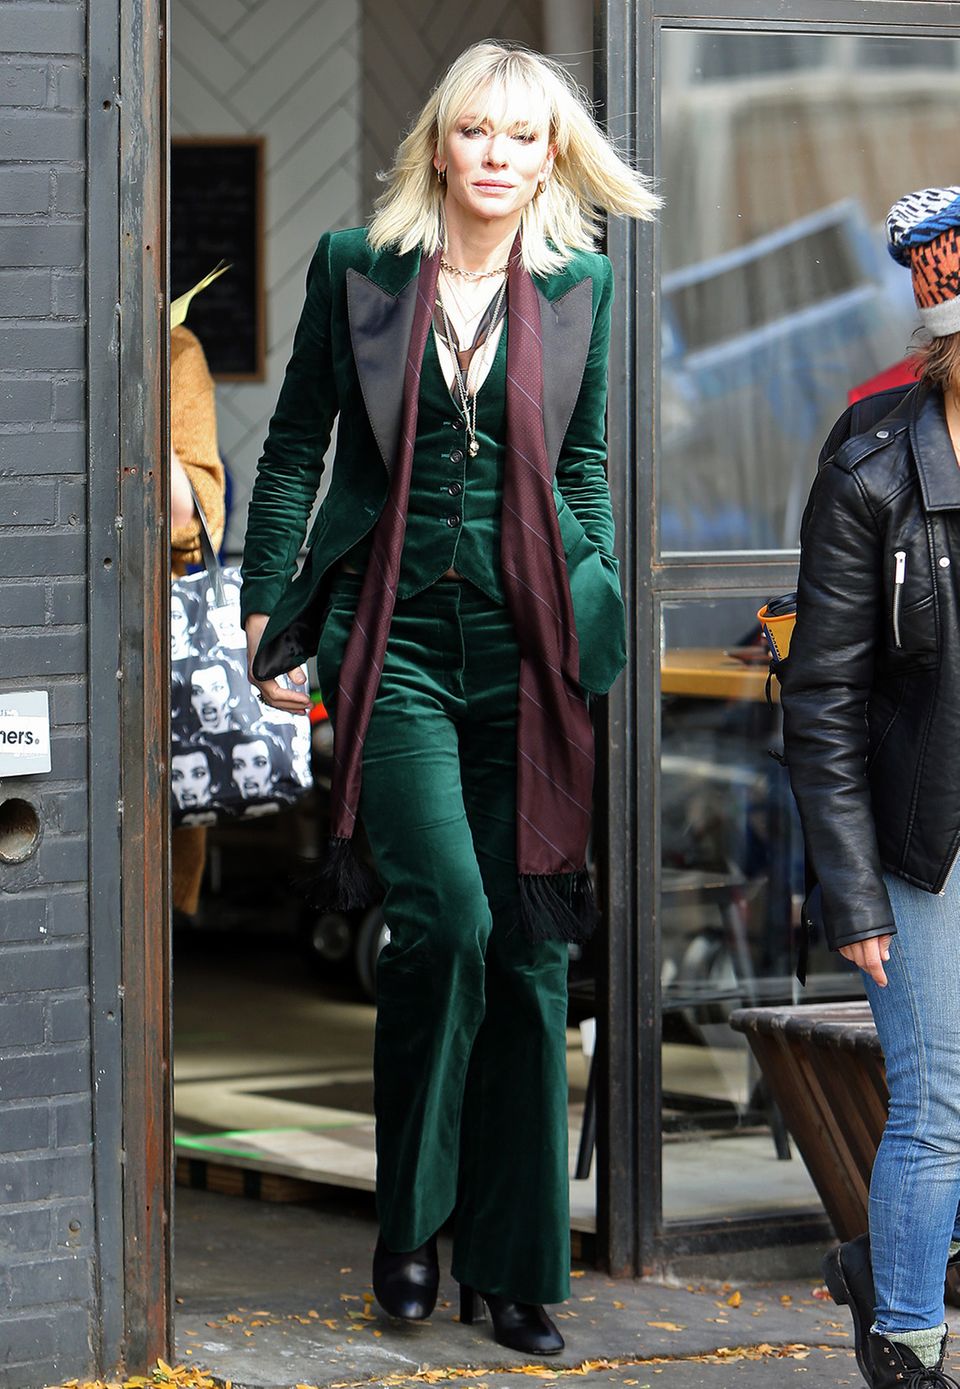 Cate Blanchett ist Sandra Bullocks rechte Hand, als quasi Brad Pitt, und mit grünem Samtanzug scheint ihre Filmfigur einen besonders extravaganten Modestil zu haben. Wir sind schon sehr gespannt auf den Film.